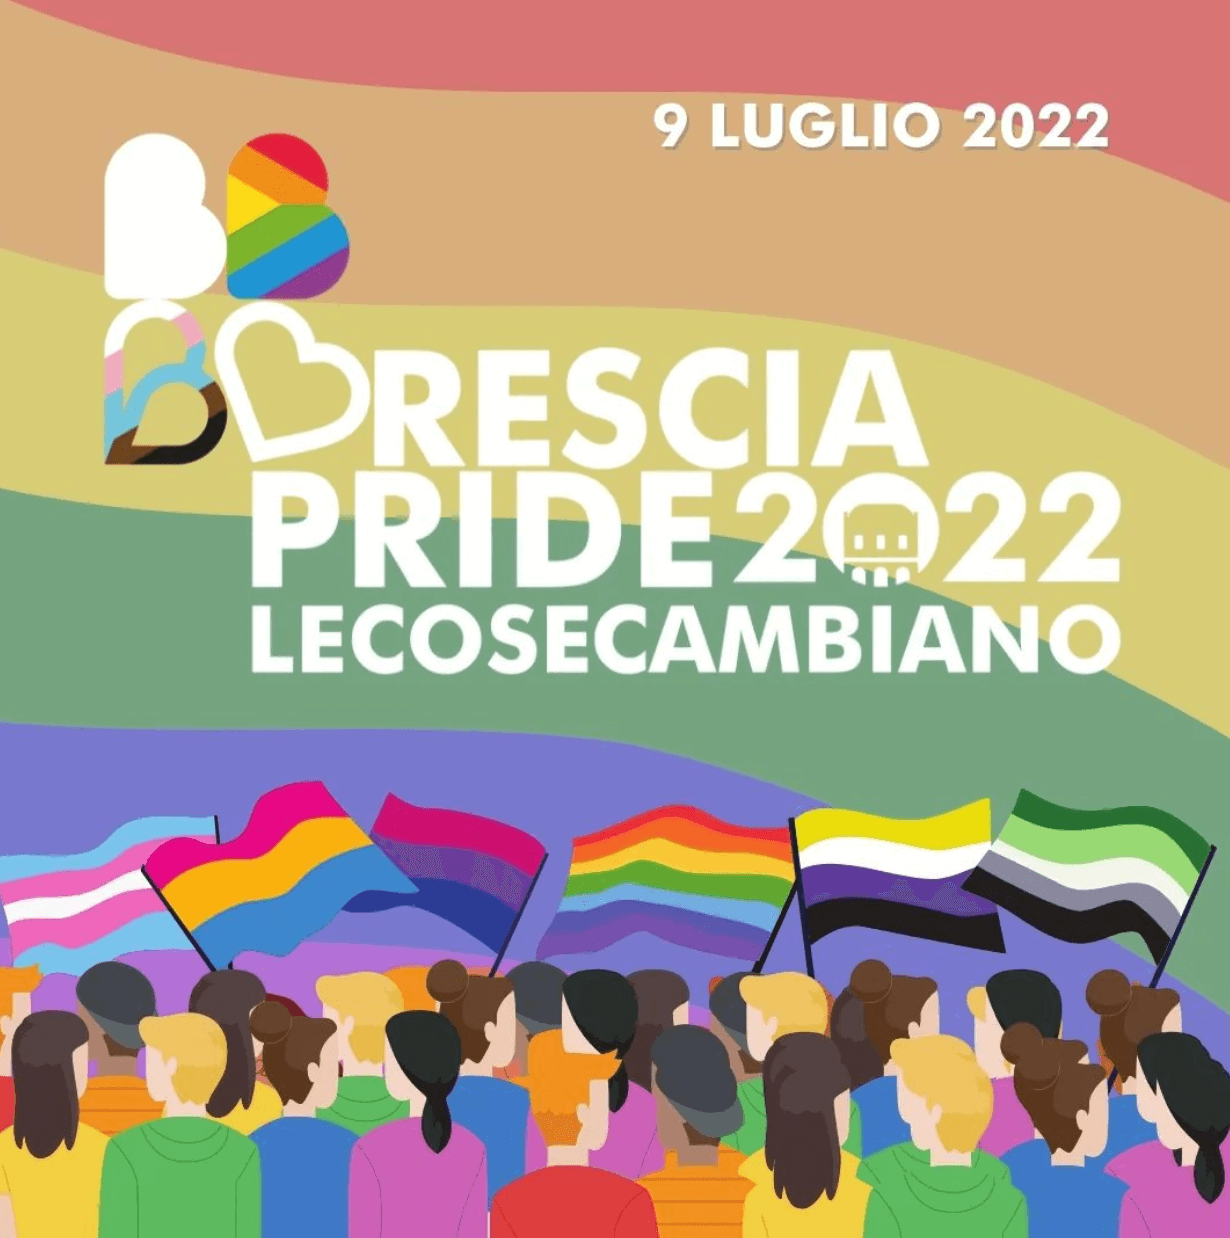 Brescia Pride 2022 il 9 luglio al grido "Le Cose Cambiano" - Brescia Pride 2022 il 9 luglio COVER 1 - Gay.it